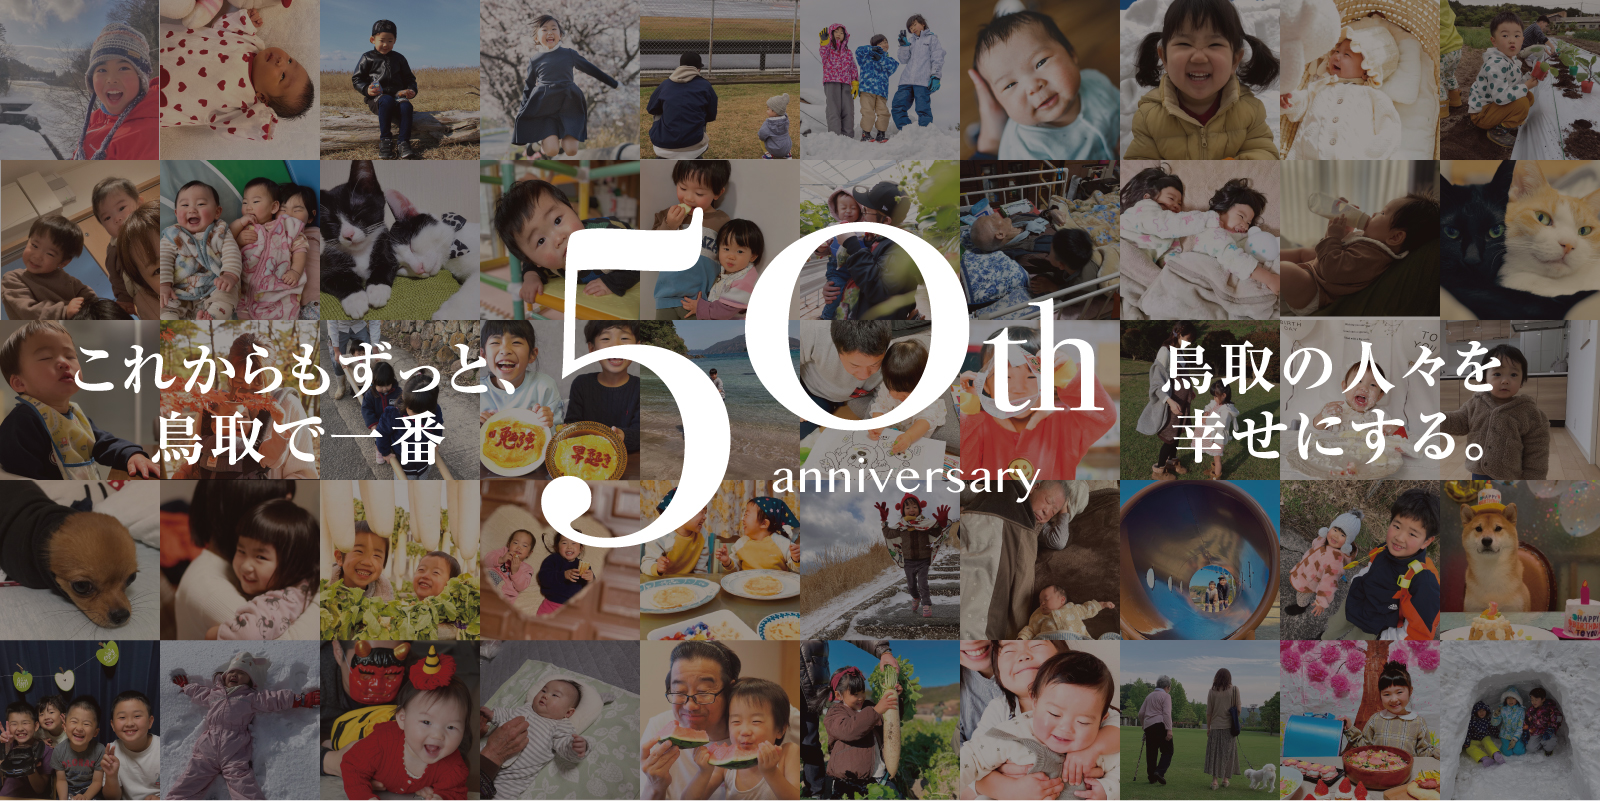 これからもずっと、鳥取で一番 50th anniversary 鳥取の人々を幸せにする。